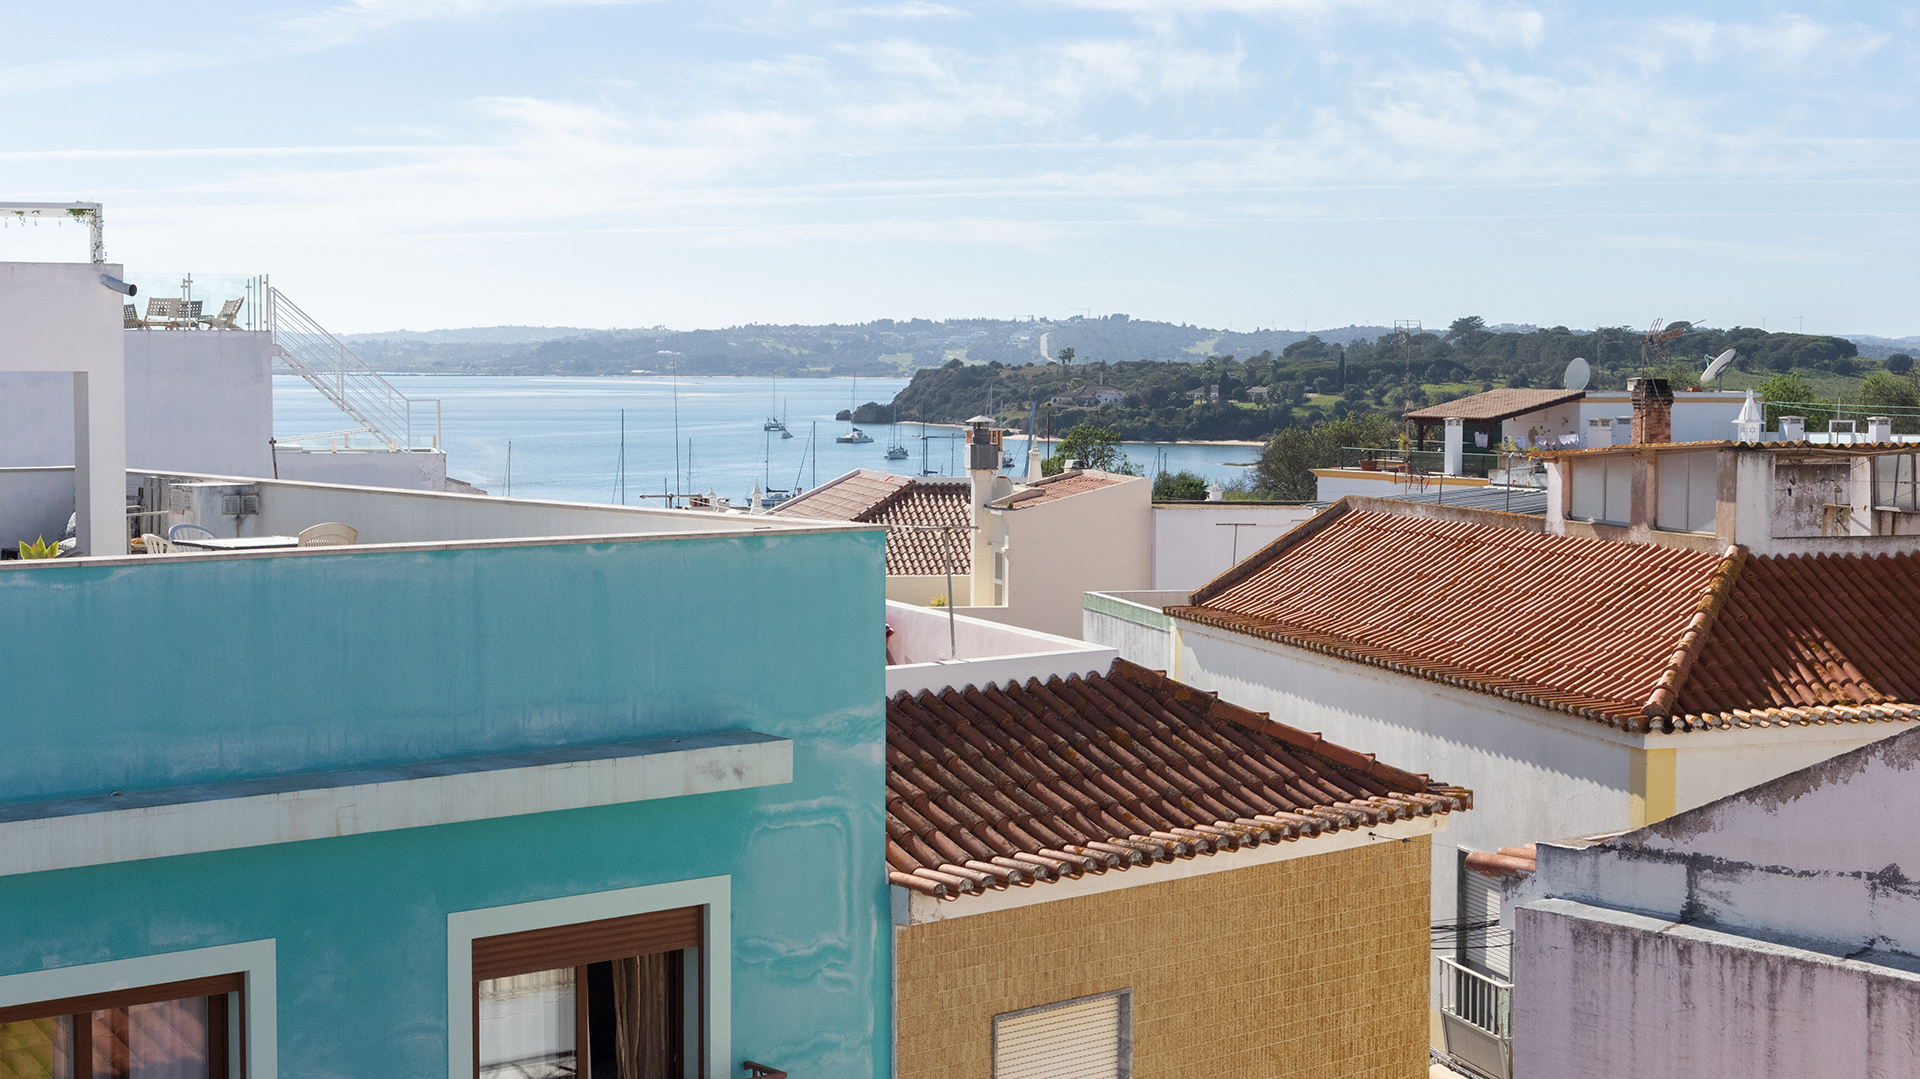 Maison de ville traditionnelle avec 3 chambres et grandes terrasses sur le toit avec vue, Alvor | LG2085 Maison de ville portugaise traditionnelle rénovée au cœur d'Alvor, avec 3 chambres et 2 salles de bains et 2 terrasses sur le toit offrant une vue magnifique sur cette belle ville de pêcheurs de l'Algarve.